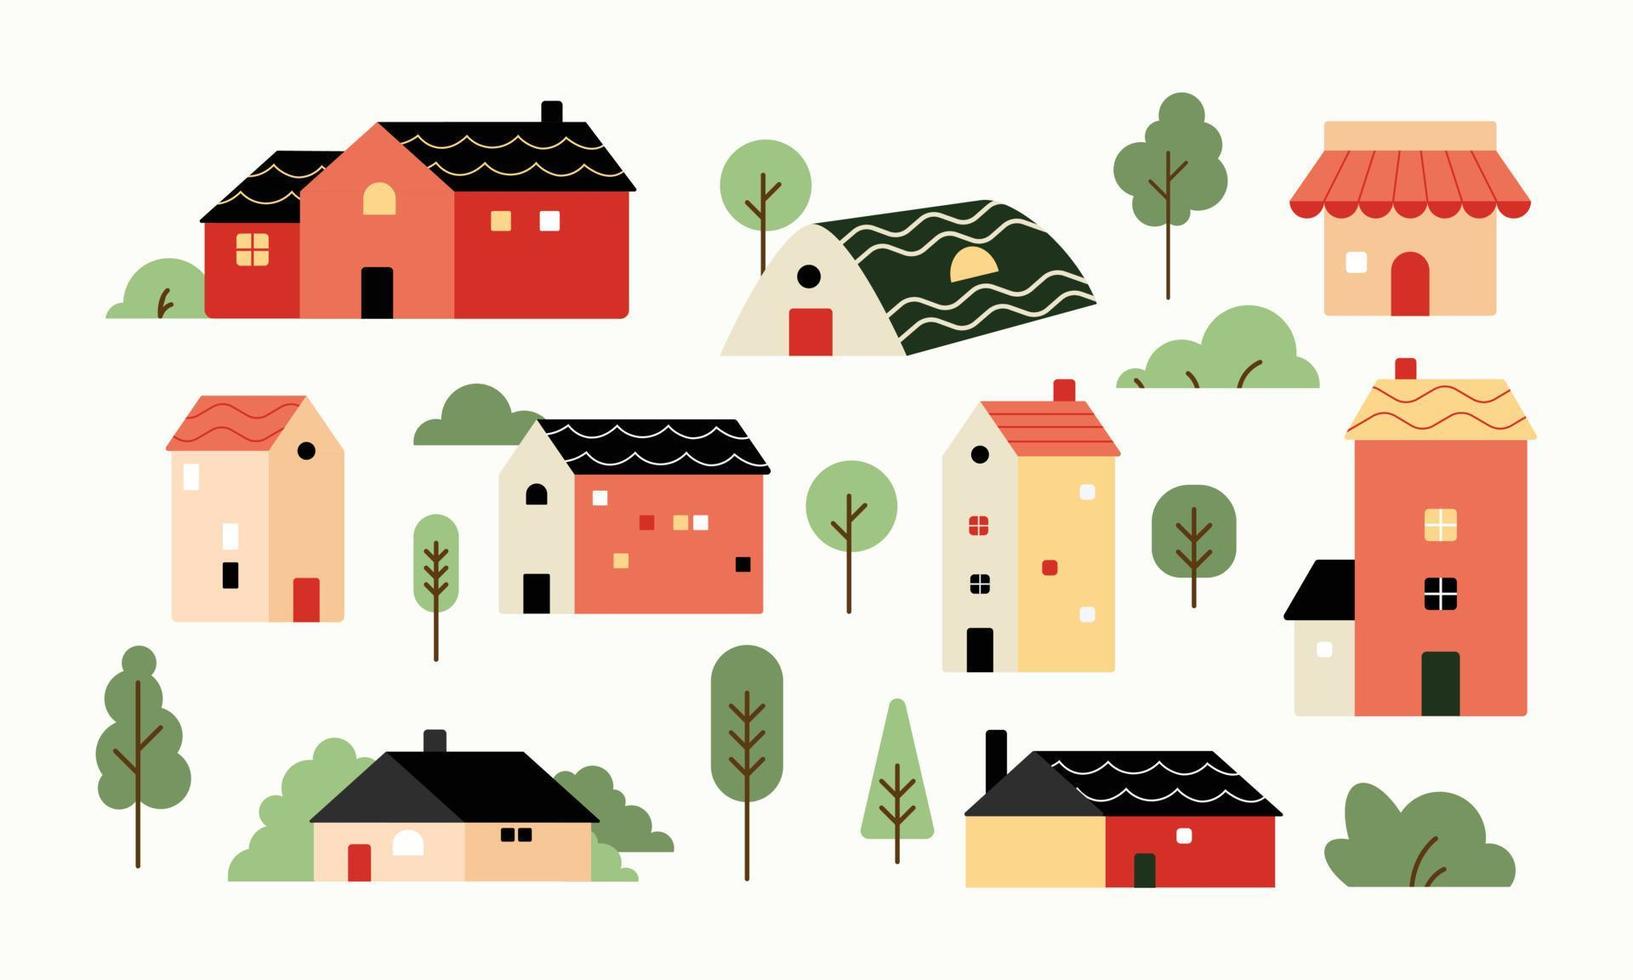 conjunto de várias pequenas casas e árvores em design plano de corte de papel. coleção de edifícios de ilustração vetorial em um estilo moderno e bonito. vetor